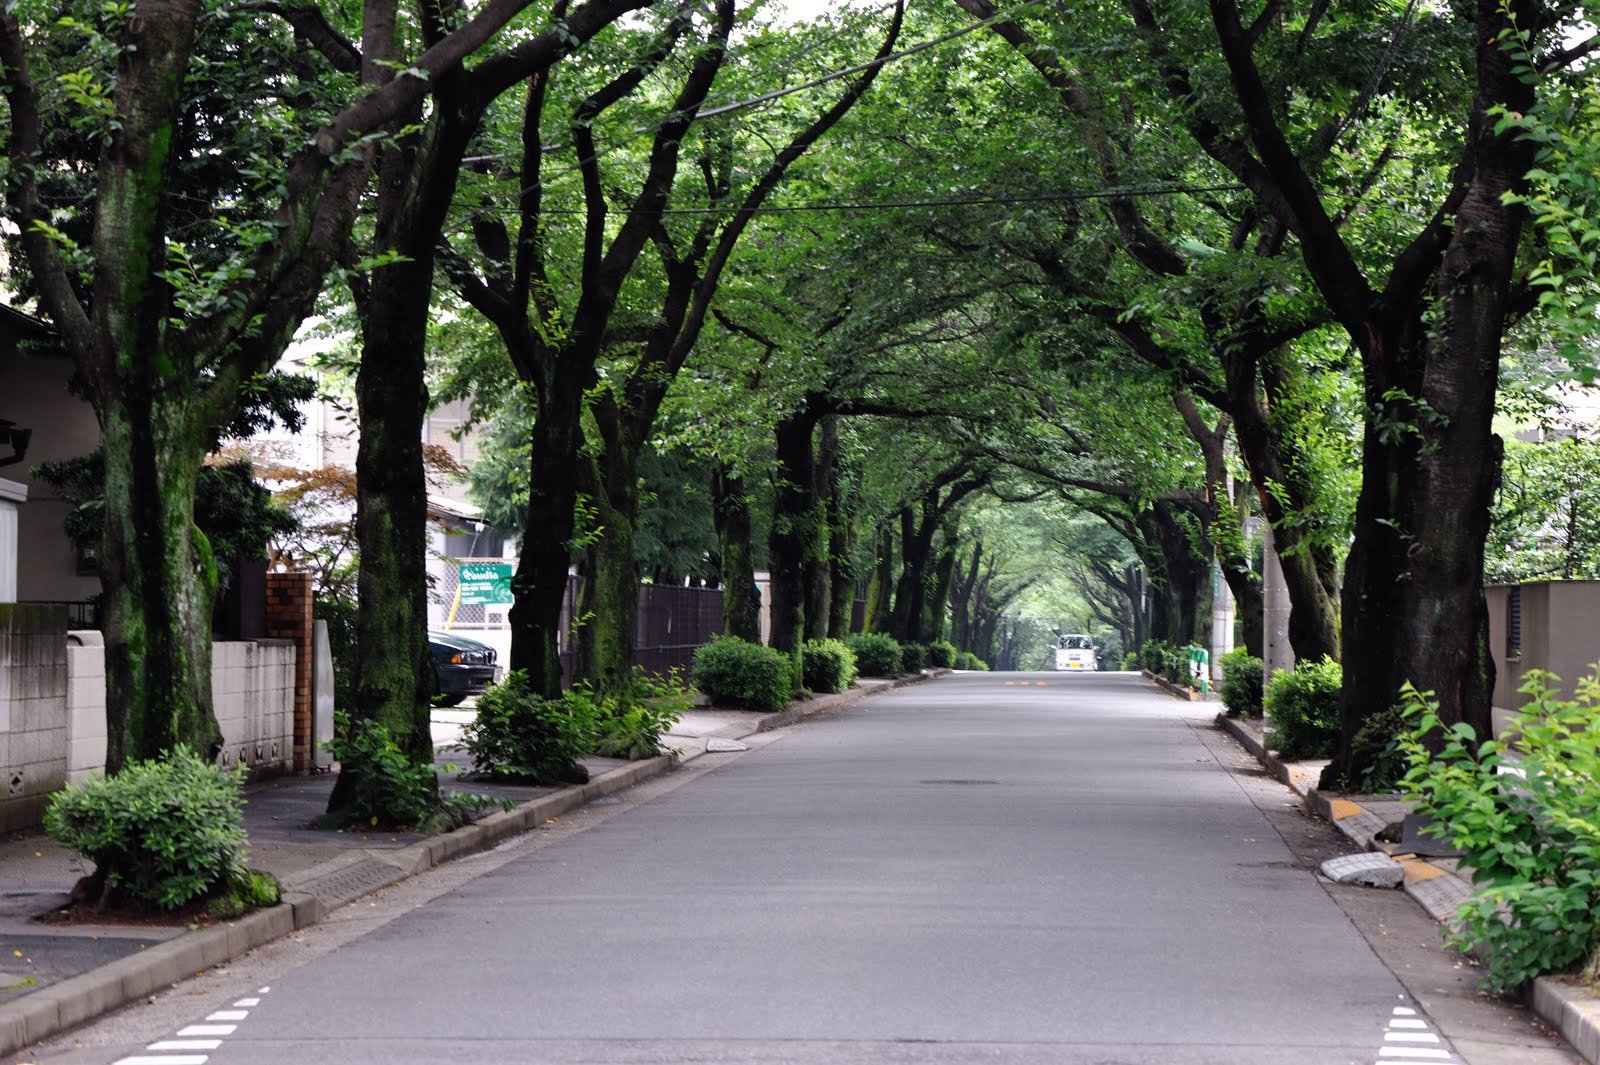 Street trees. Улица с деревьями. Озеленение дорог. Улица деревья город. Известные улицы с деревьями.